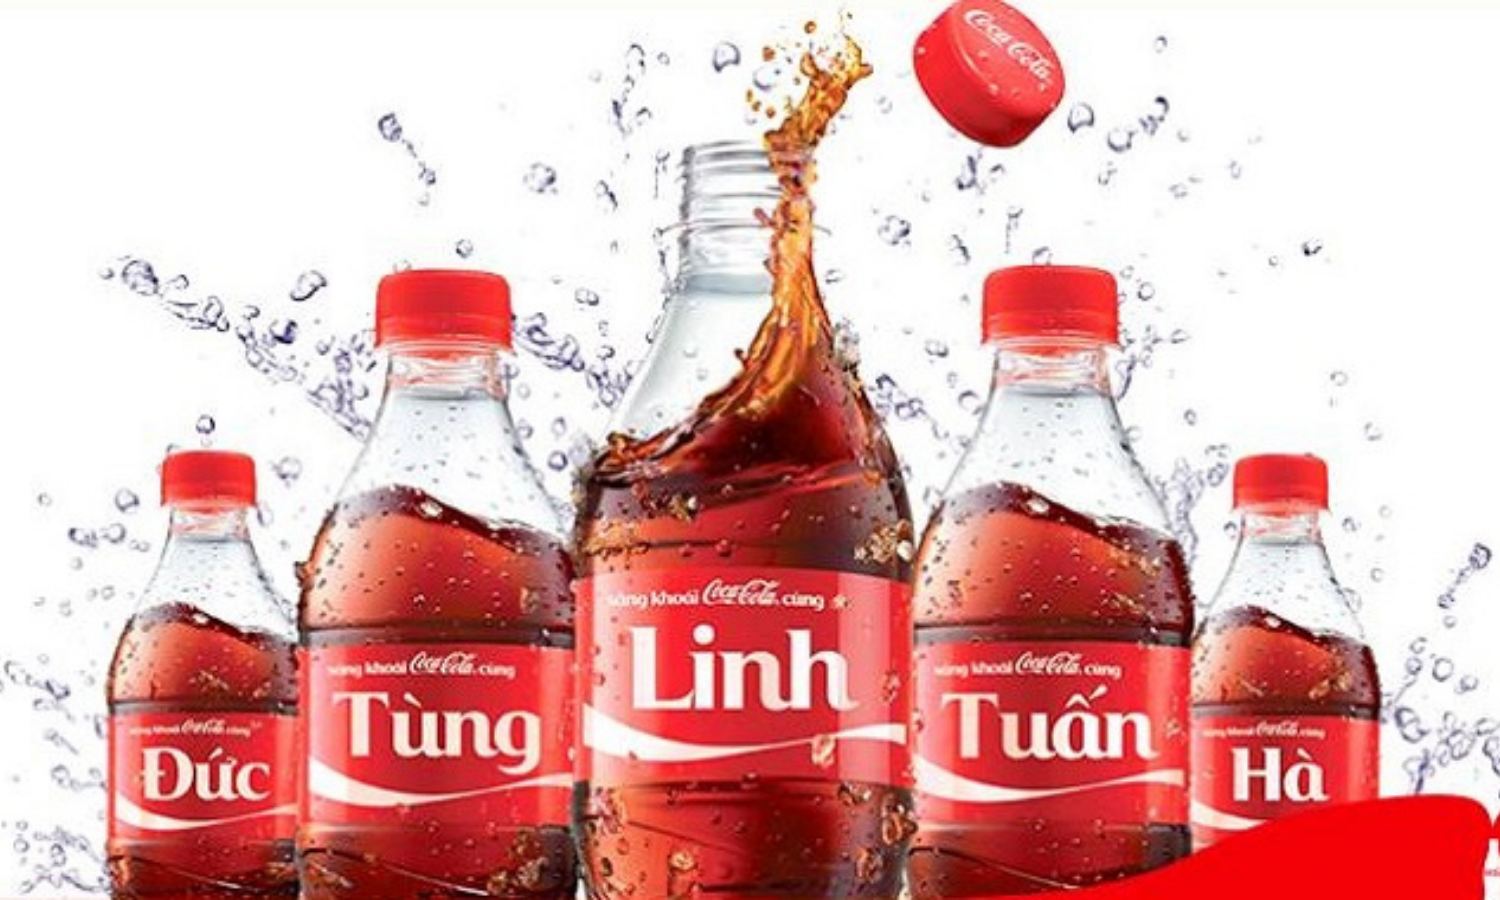 Chiến dịch Viral Marketing Share a coke của Coca Cola